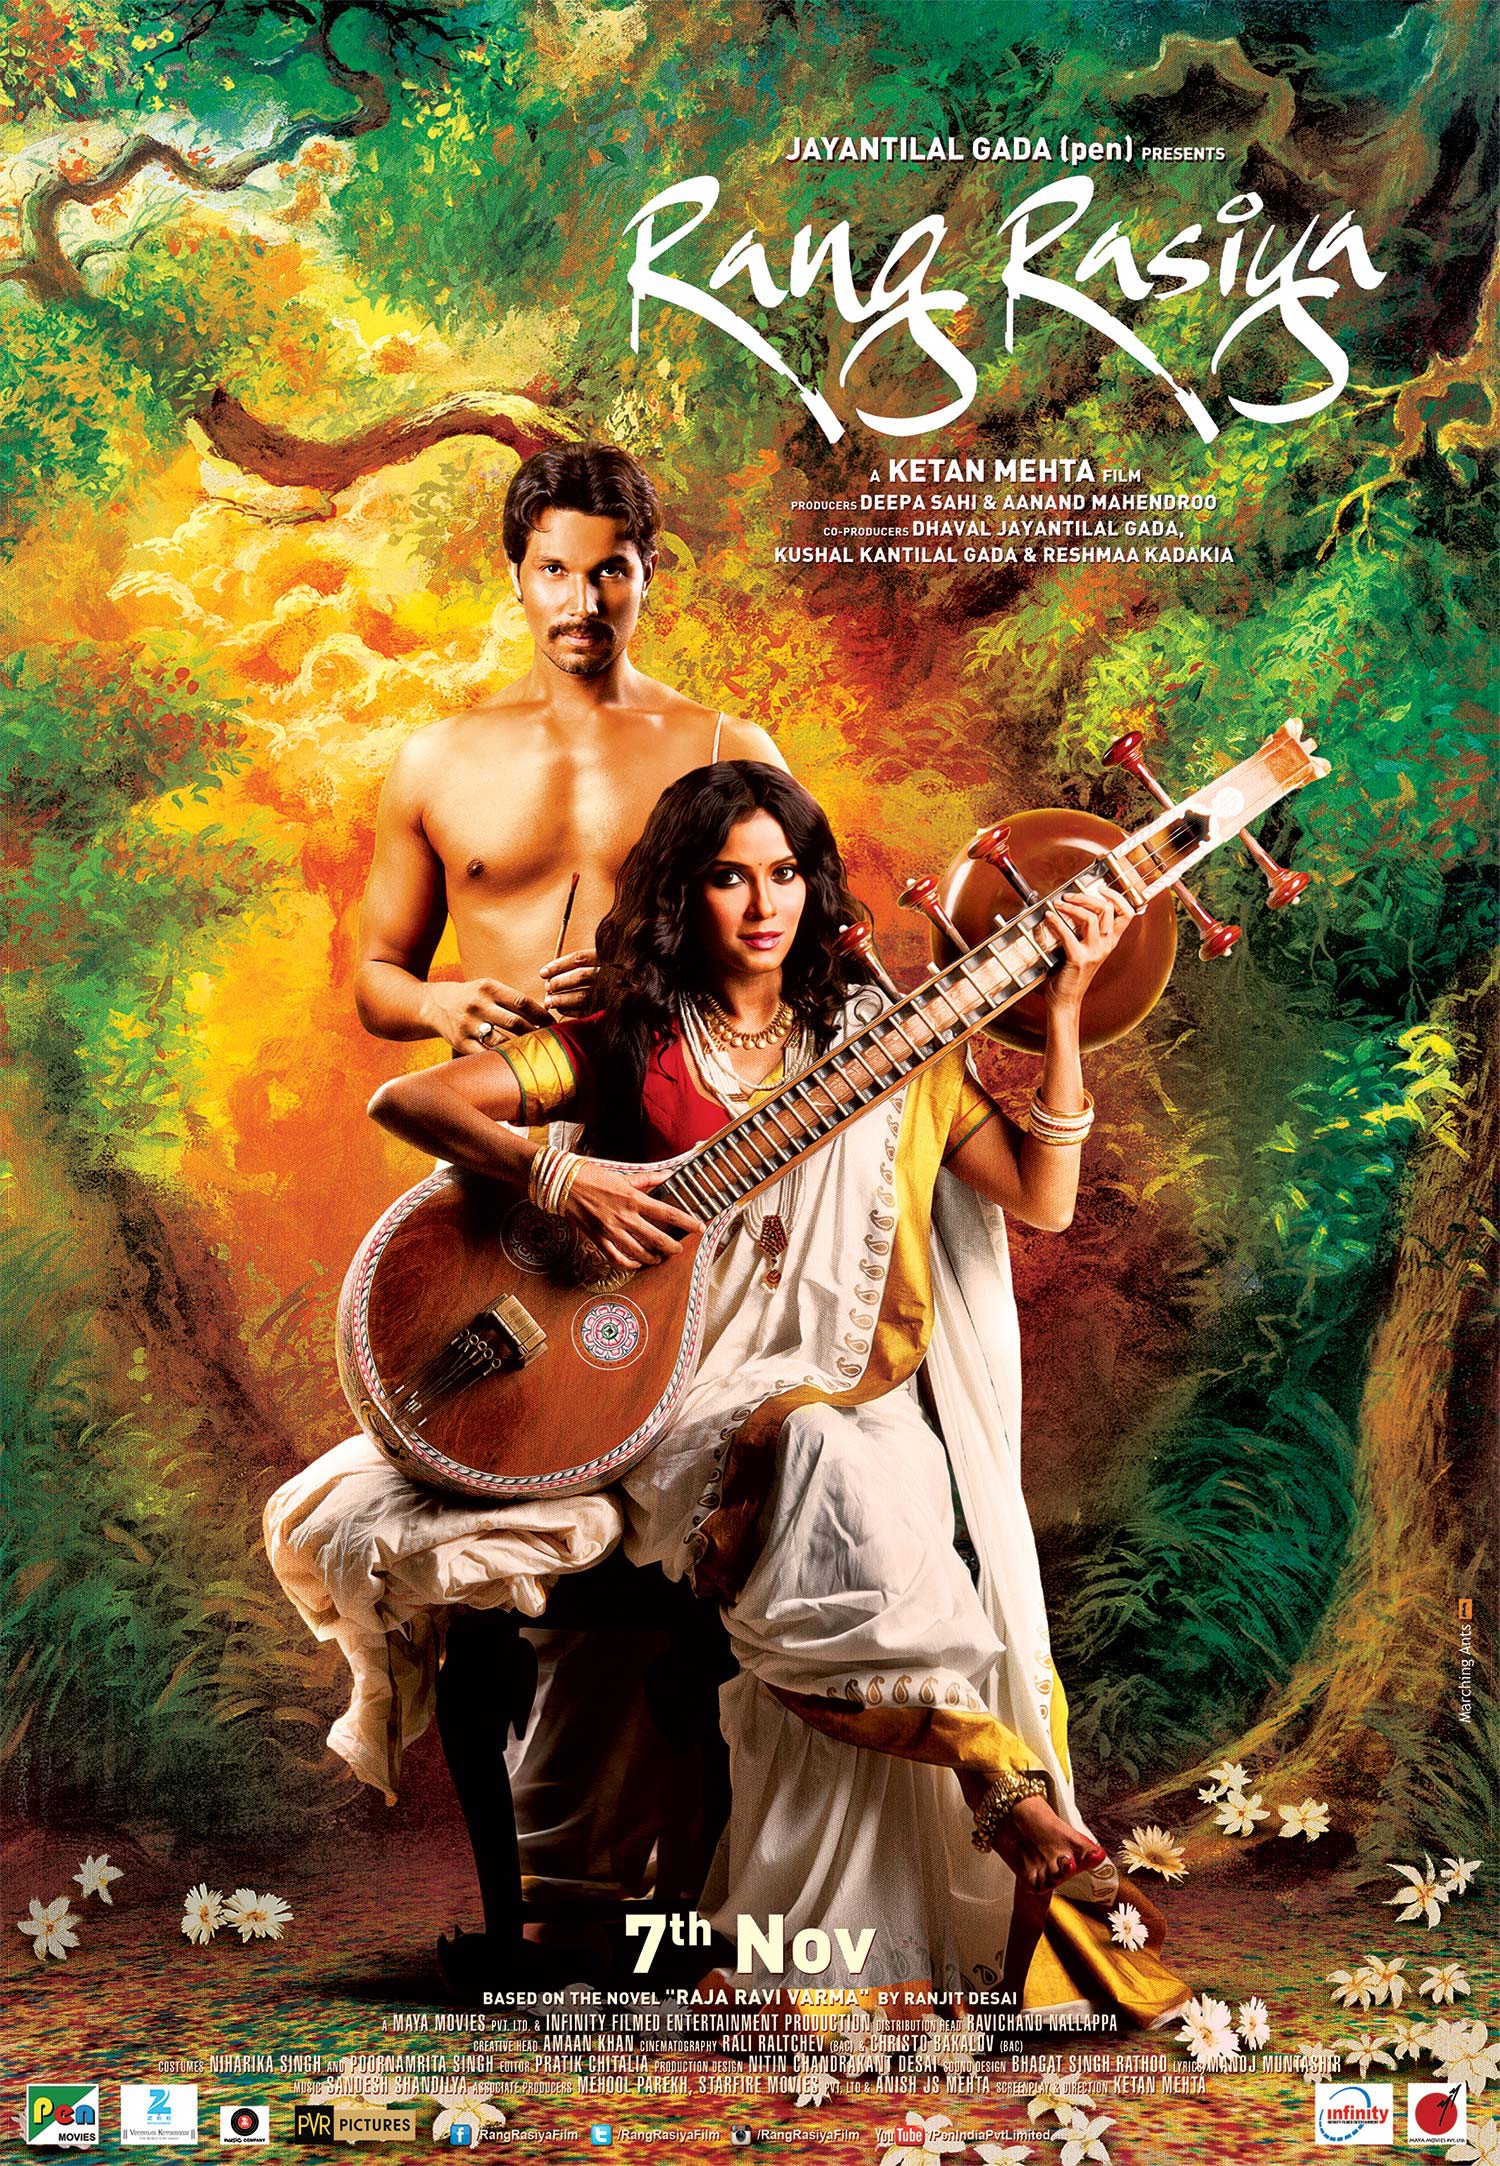 Mega Sized Movie Poster Image for Rang rasiya (#8 of 9)